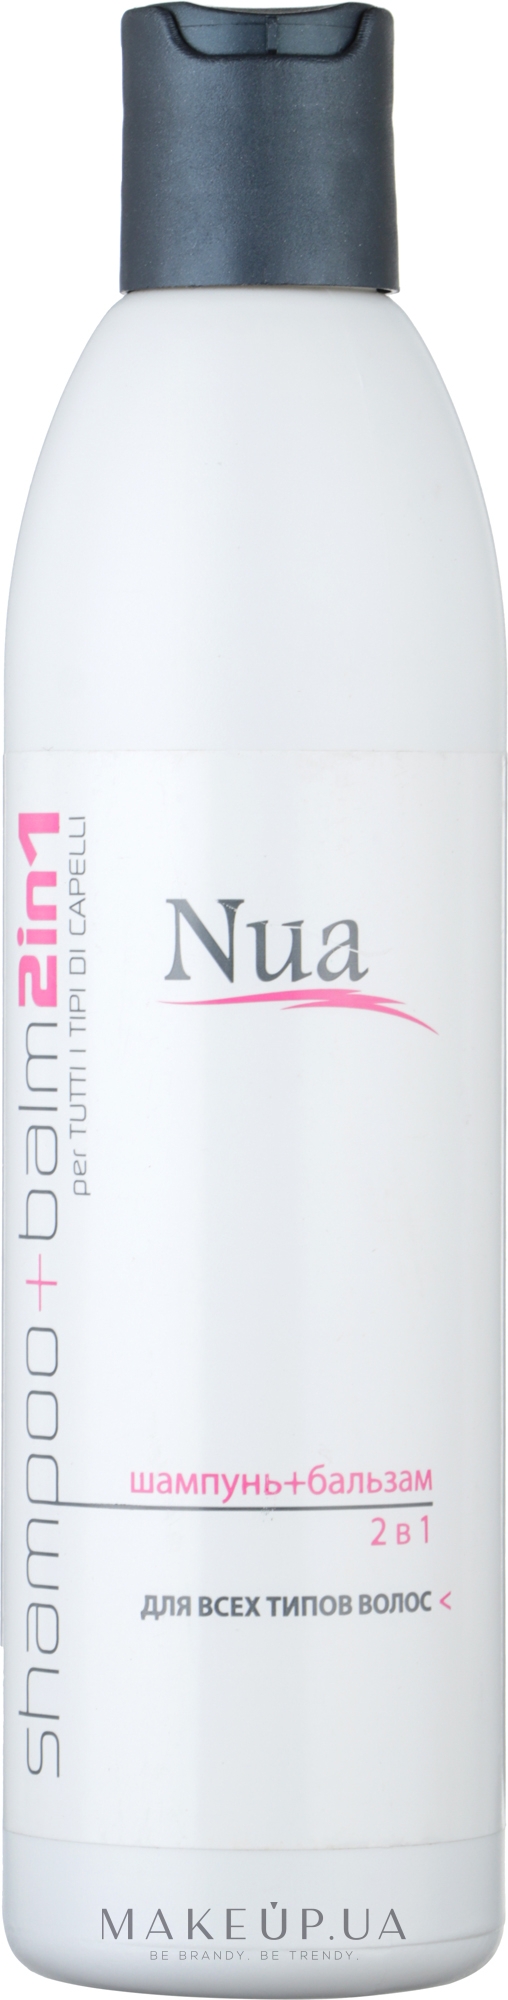 Шампунь и бальзам 2 в 1 для всех типов волос - Nua Shampoo + Balm 2 in 1 — фото 250ml